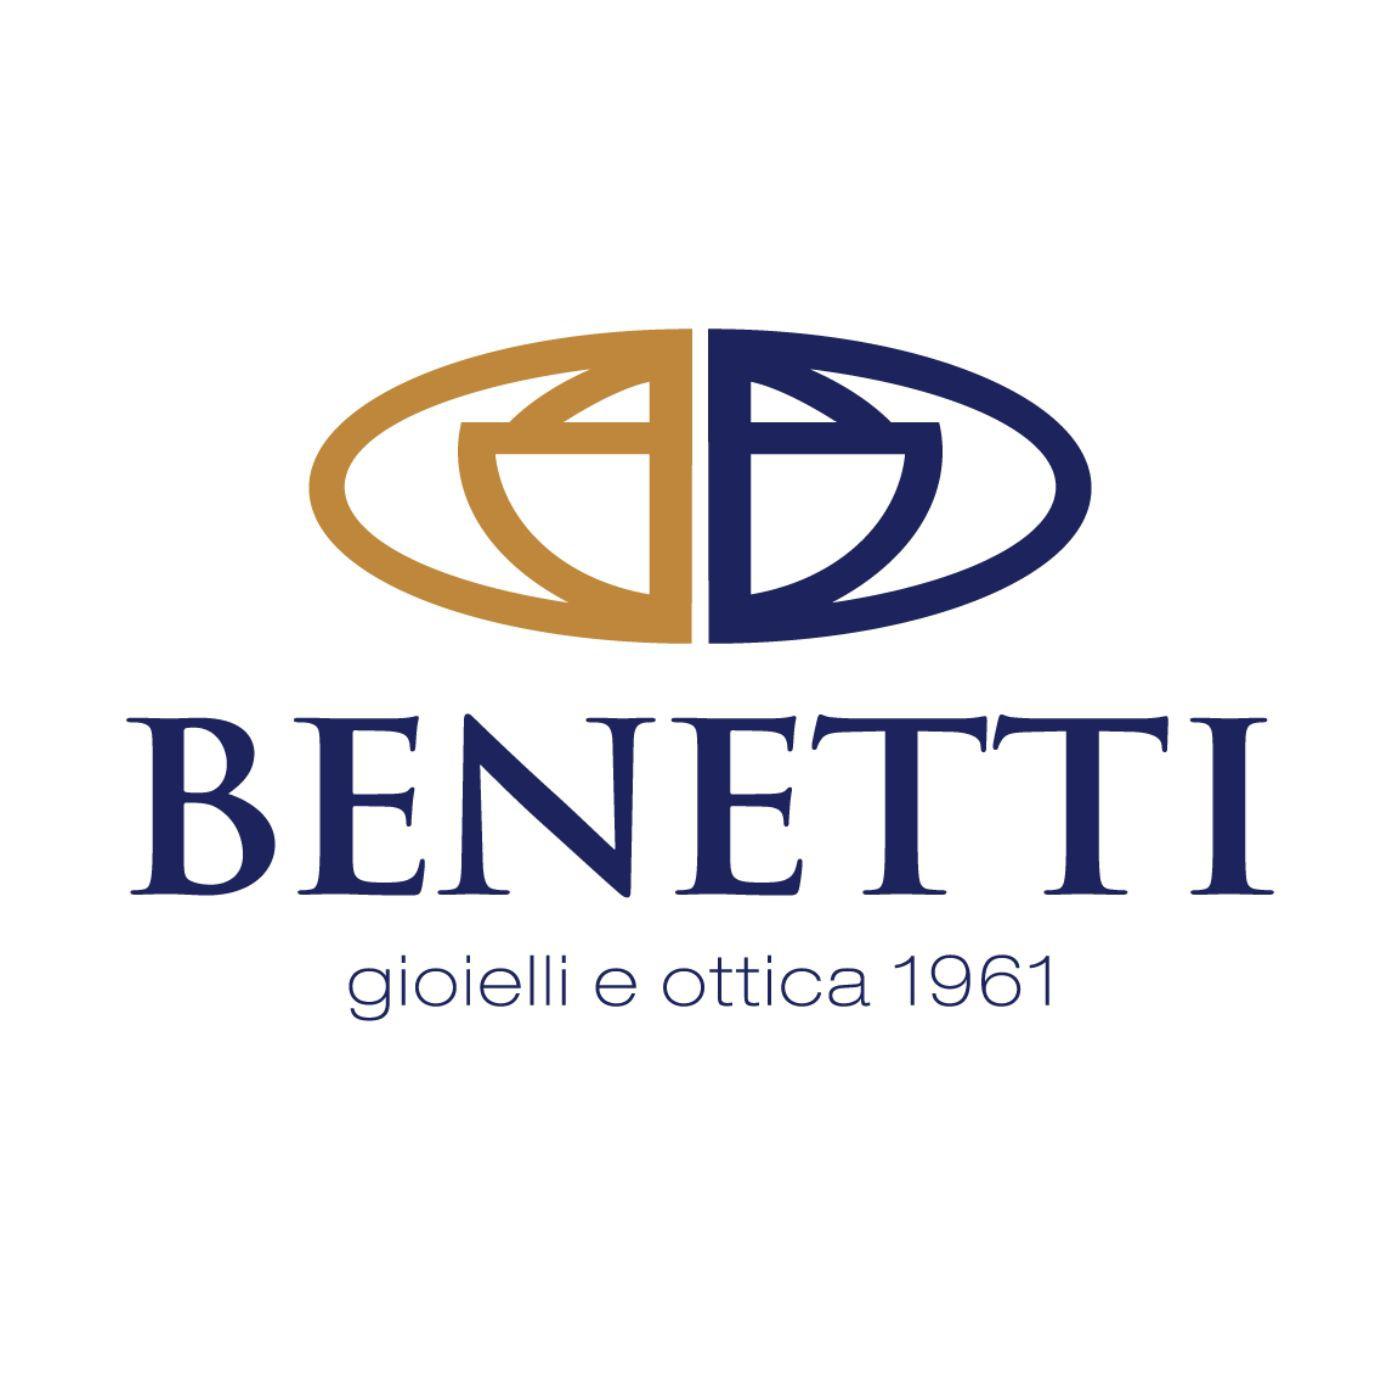 Gioielleria Benetti - Rivenditore Autorizzato Rolex - Orologerie Verona